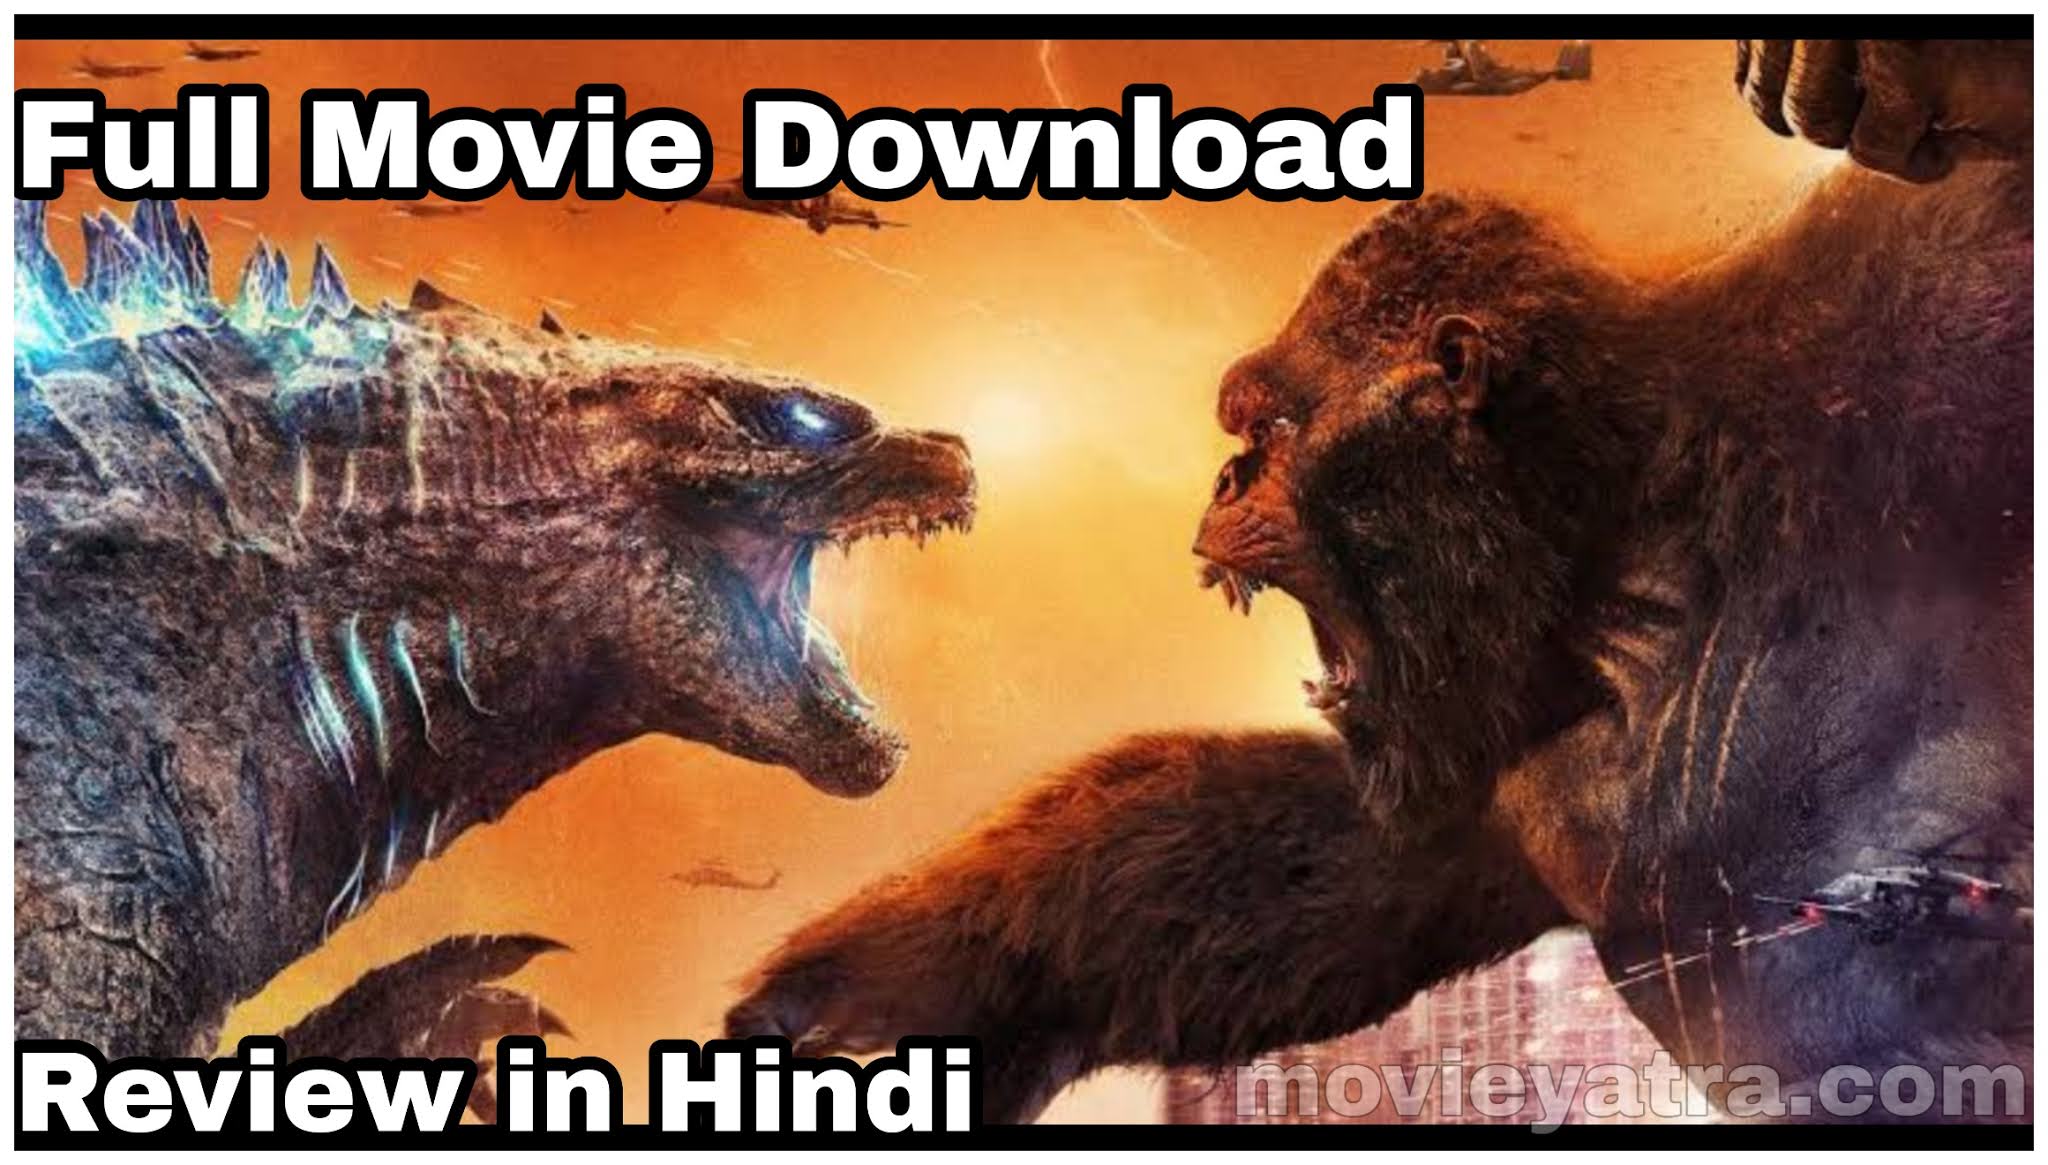 Godzilla vs. Kong Movie Download Hindi Dubbed Full HD quality 1080p, Godzilla vs. Kong Full movie review in Hindi language , Godzilla vs. Kong Full